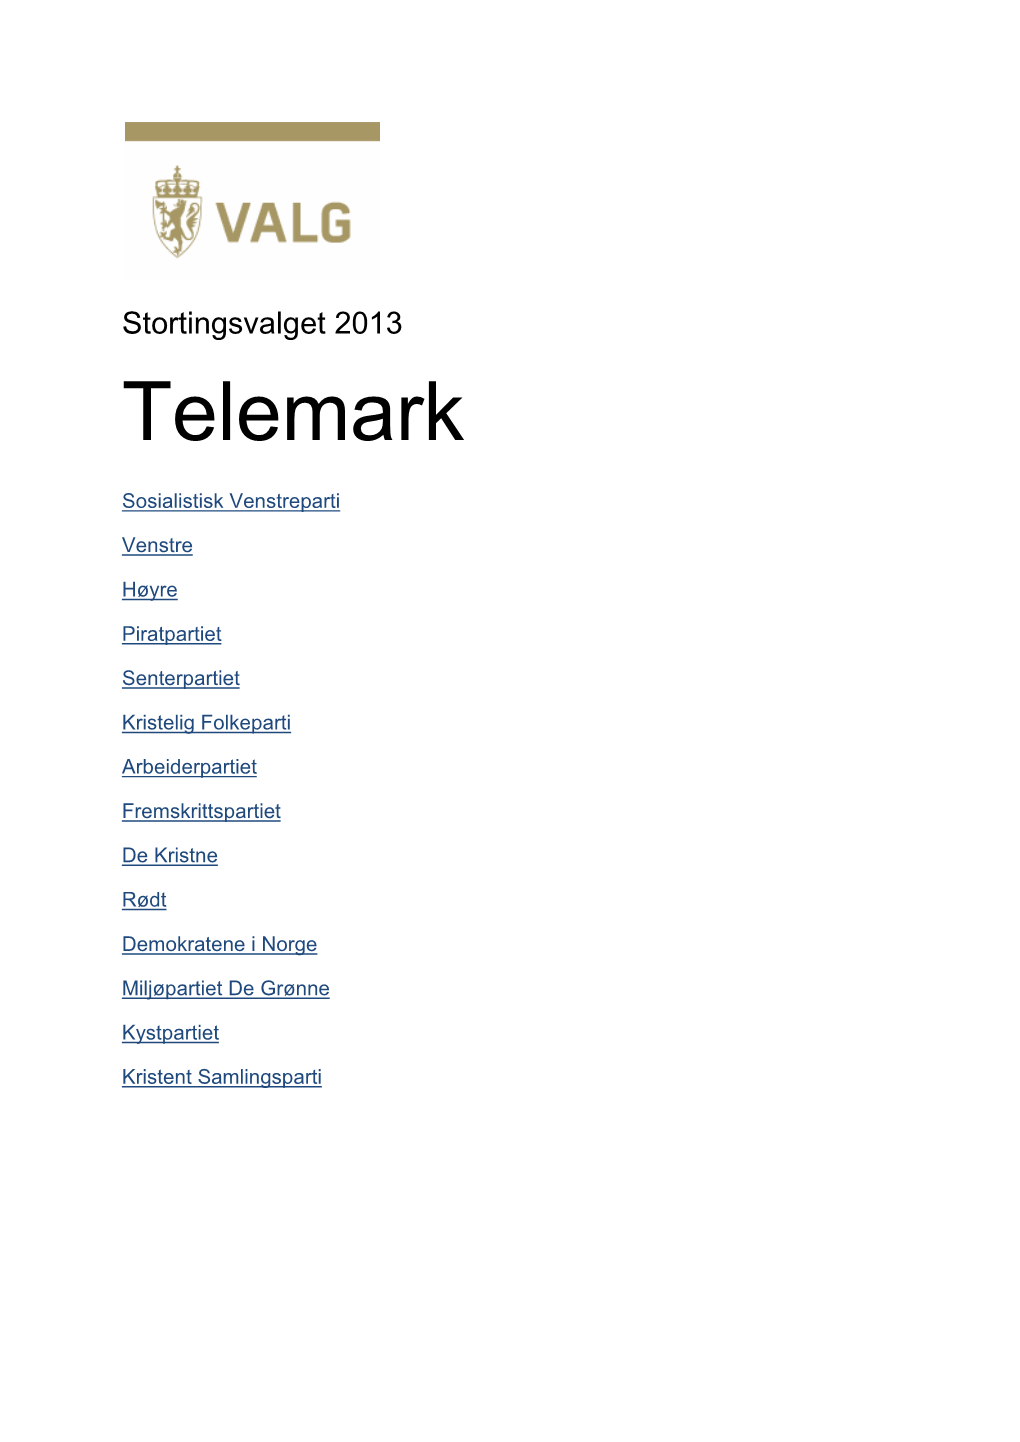 Stortingsvalget 2013 Telemark